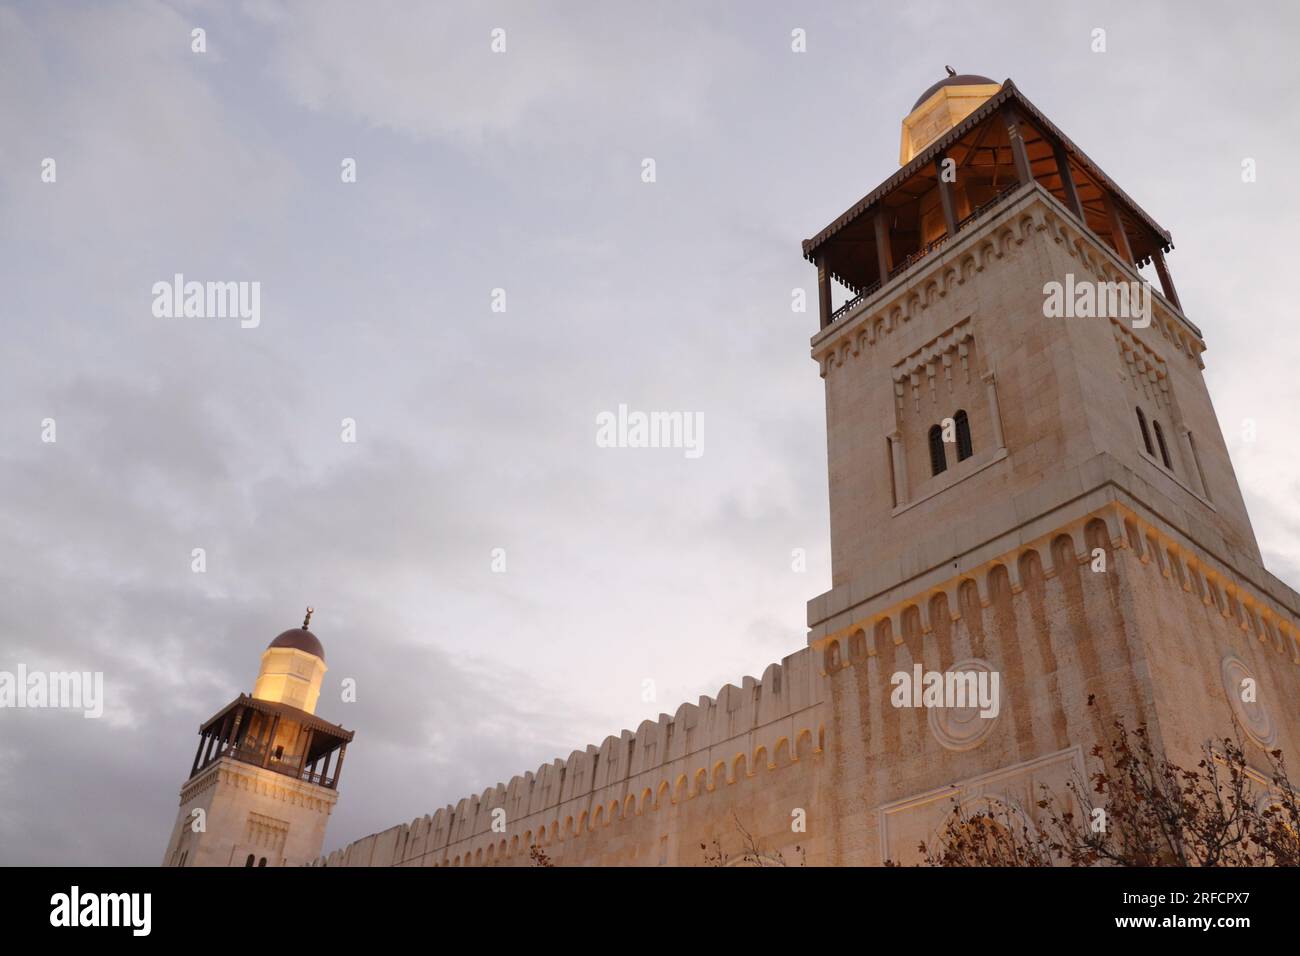 Deux minarets d'une belle mosquée islamique (Amman, Jordanie) Mosquée du Roi Hussein Bin Talal Banque D'Images